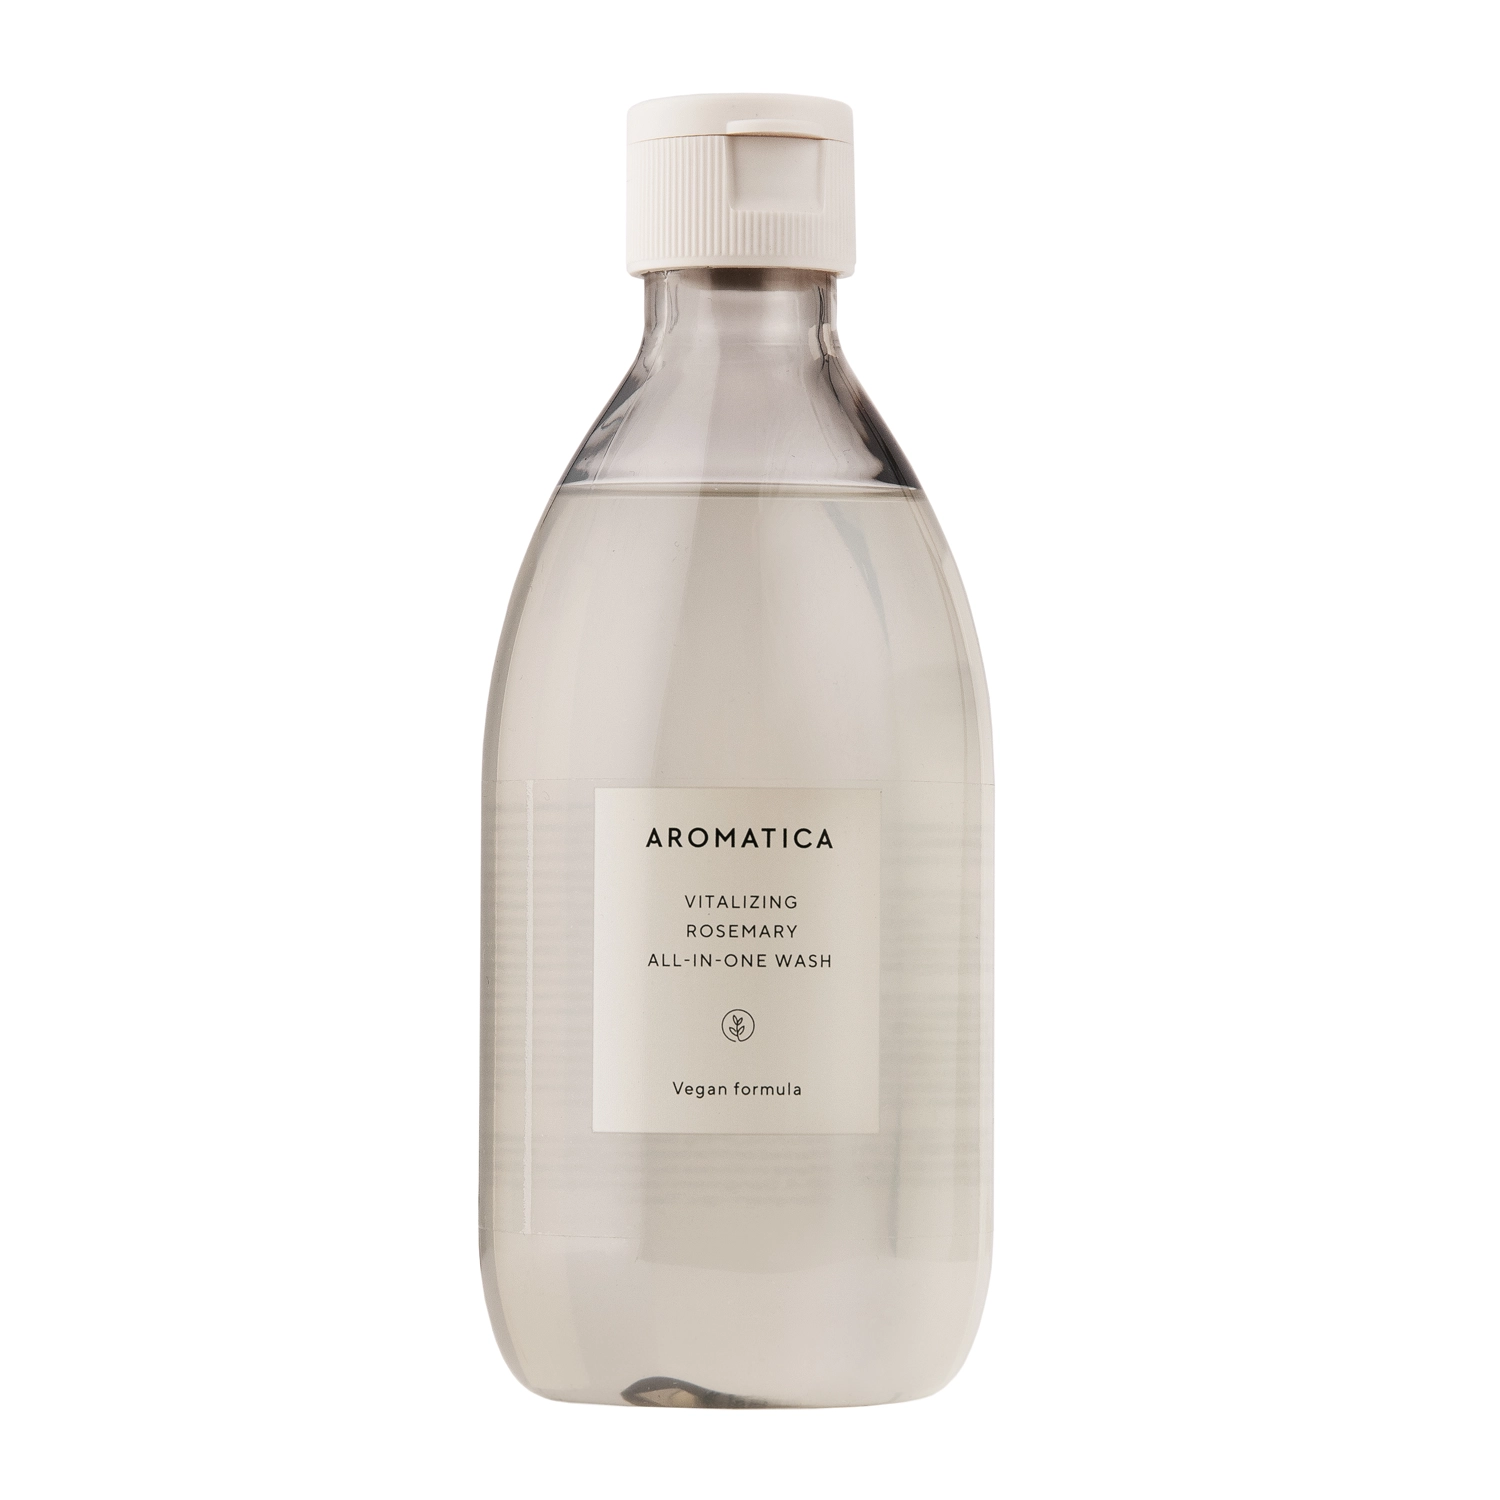 Aromatica - Vitalizing Rosemary All-in-One Wash - Univerzálny gél na čistenie tváre a tela - 300ml